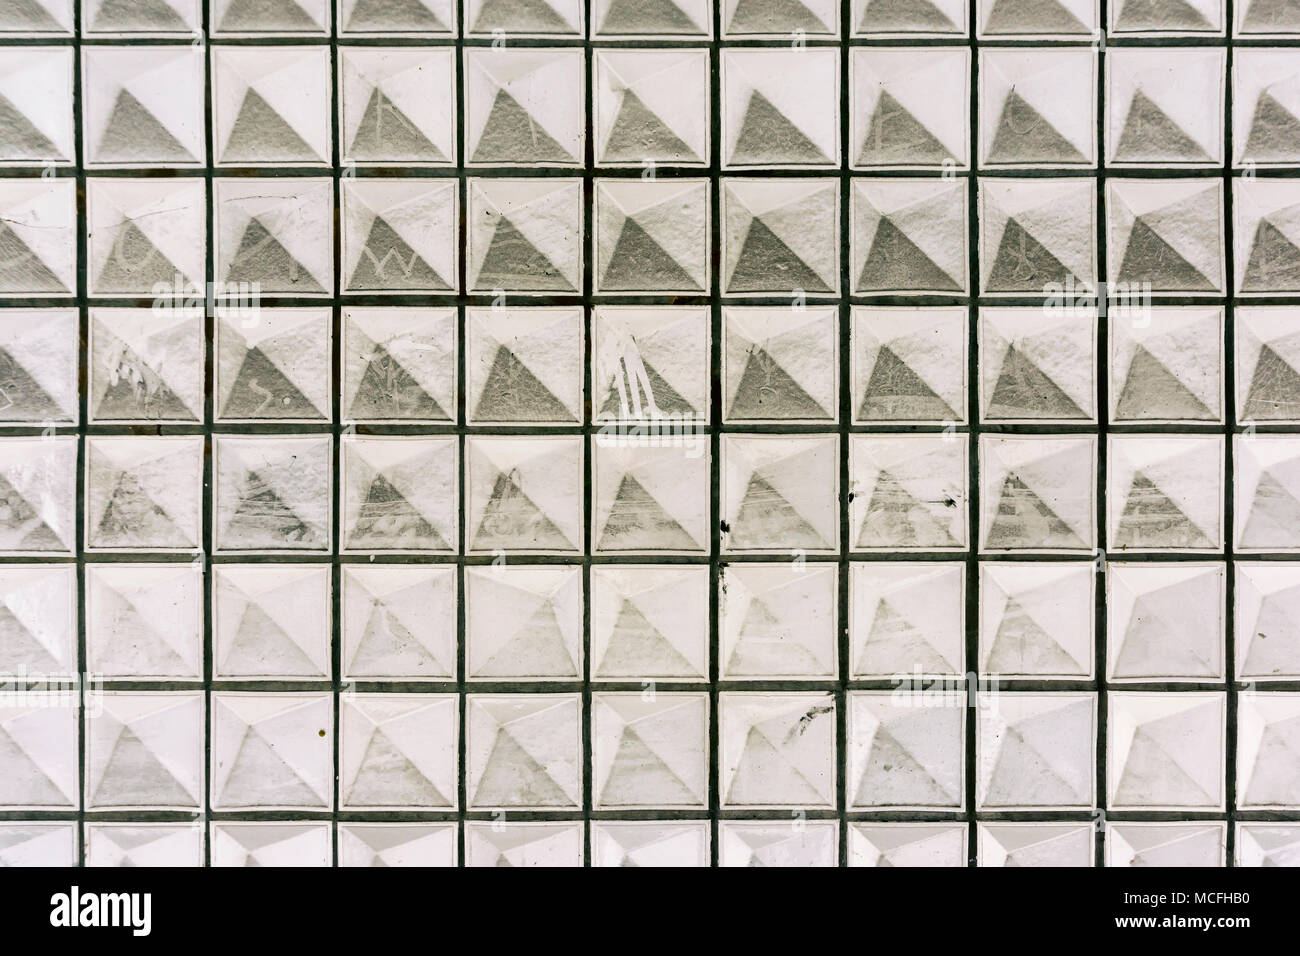 Wand mit negativen Pyramide Muster von Staub bedeckt Stockfoto